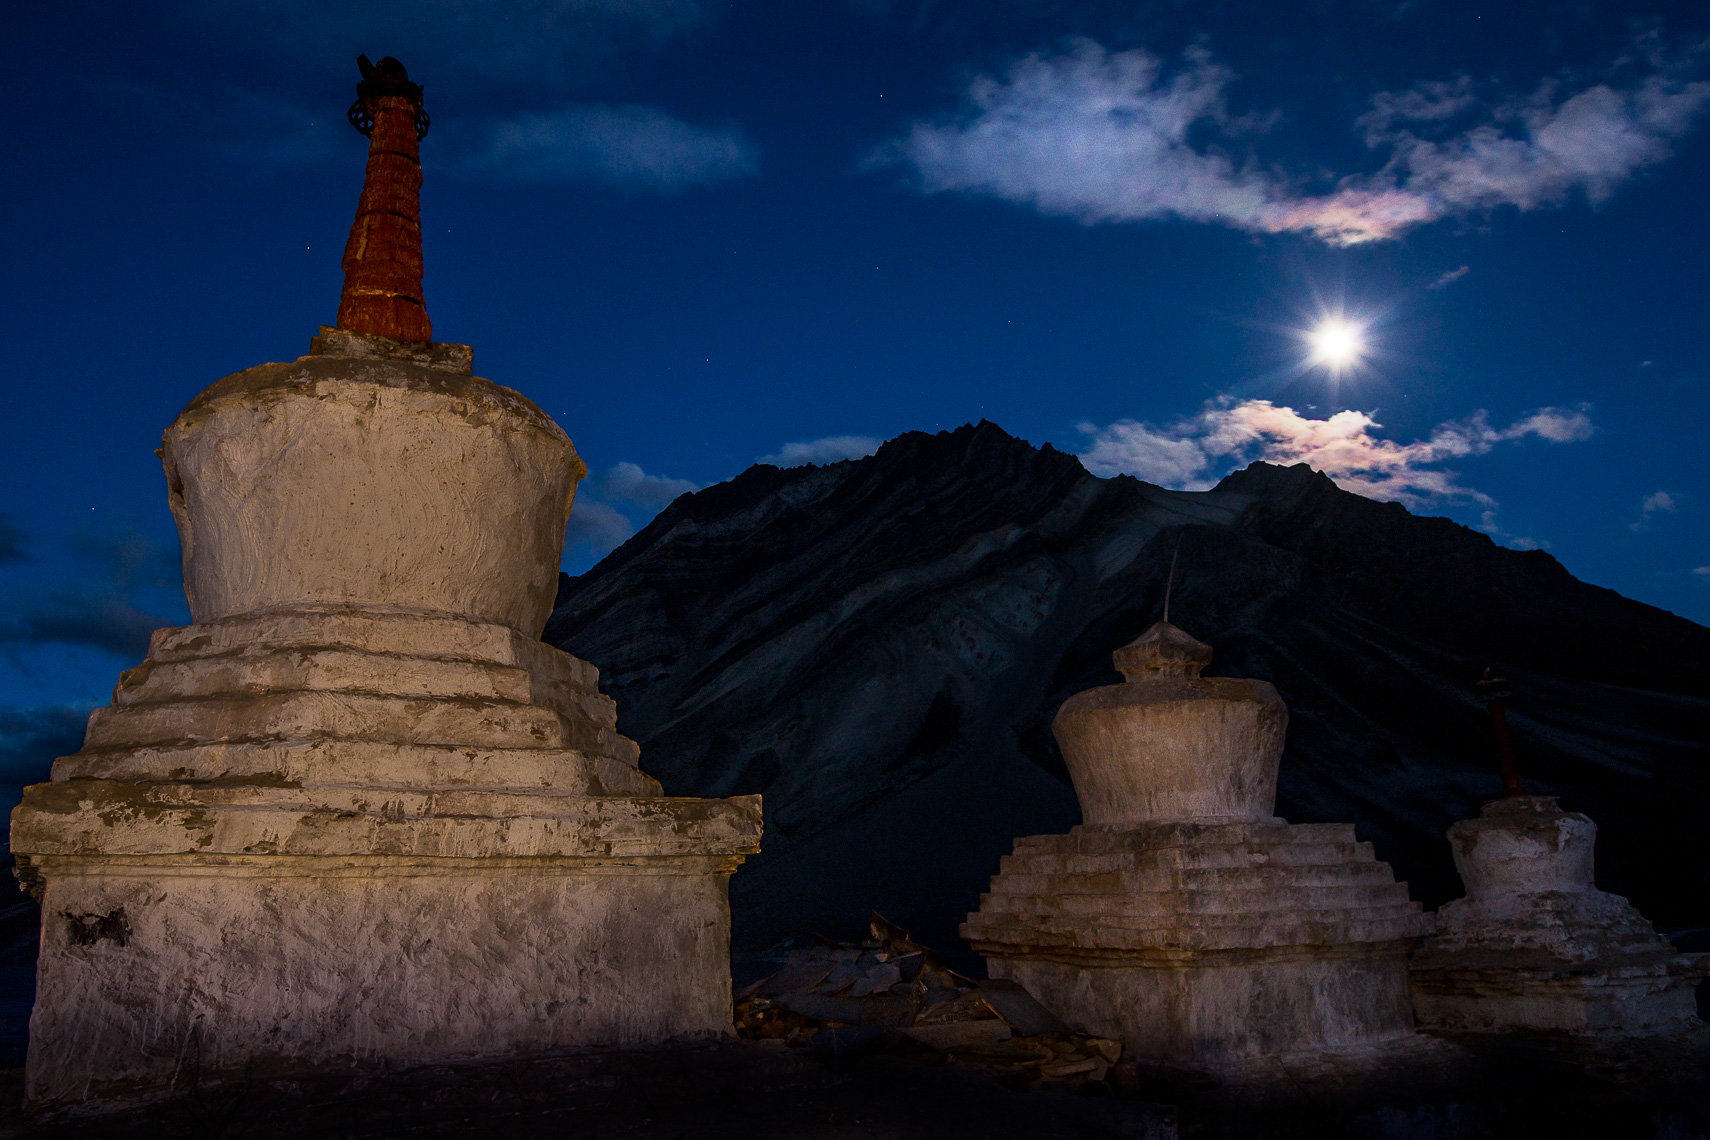 08_201609_LadakhIndia_3058